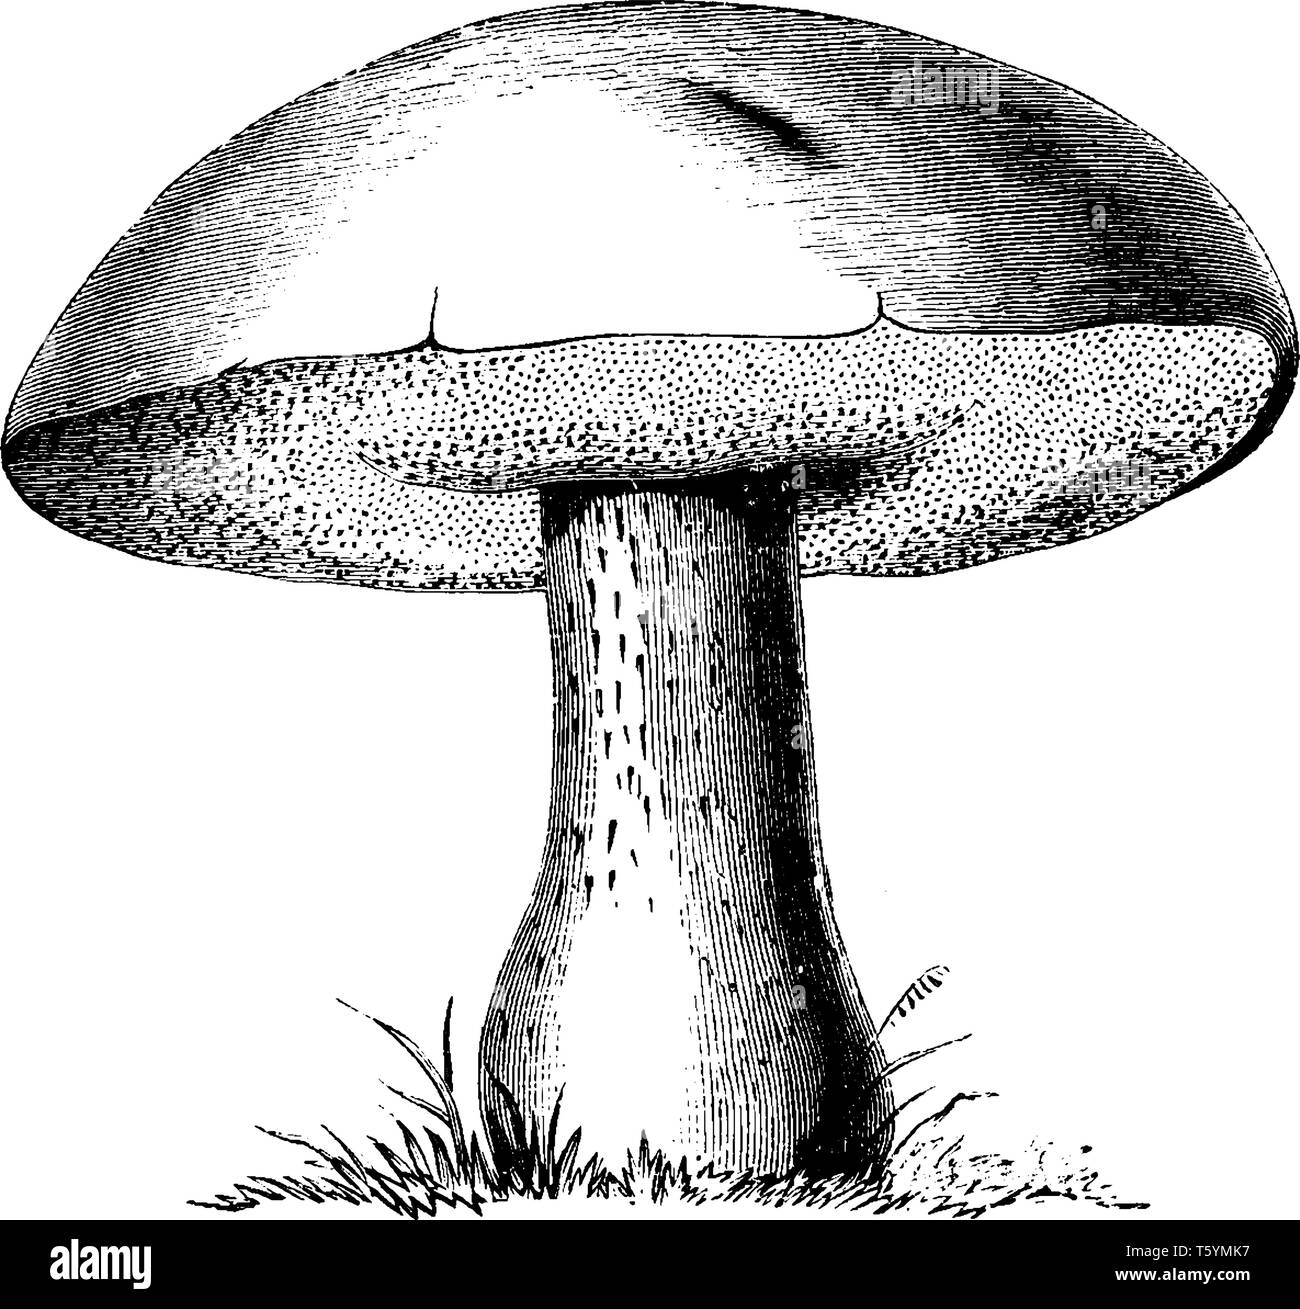 Il Comune di fungo porcino cresce nei boschi di latifoglie e doniferous foreste e piantagioni di alberi, vintage disegno della linea di incisione o illustrazione. Illustrazione Vettoriale